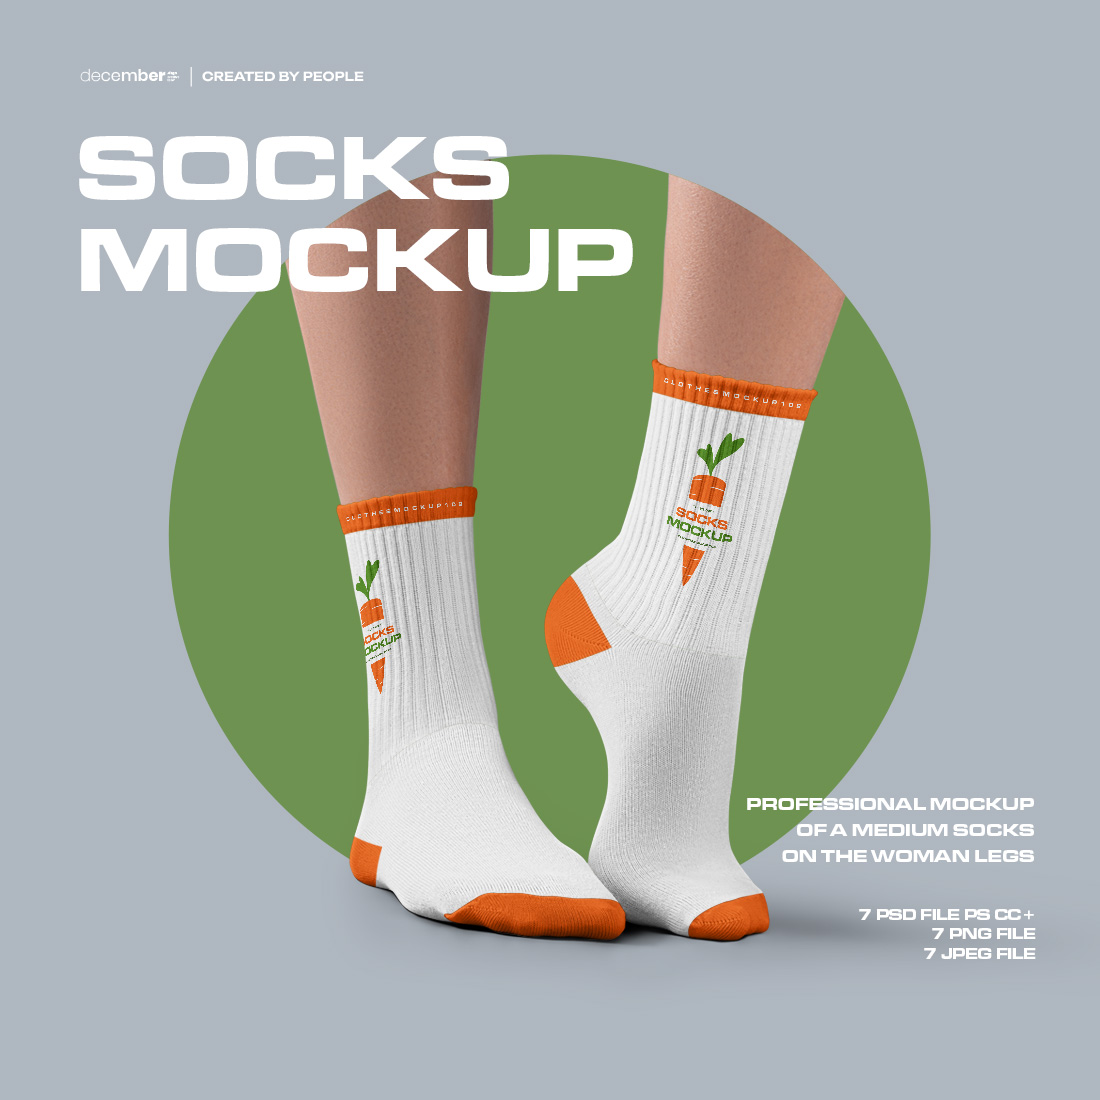 7 Mockups Medium Socks on the Woman Legs cover image.